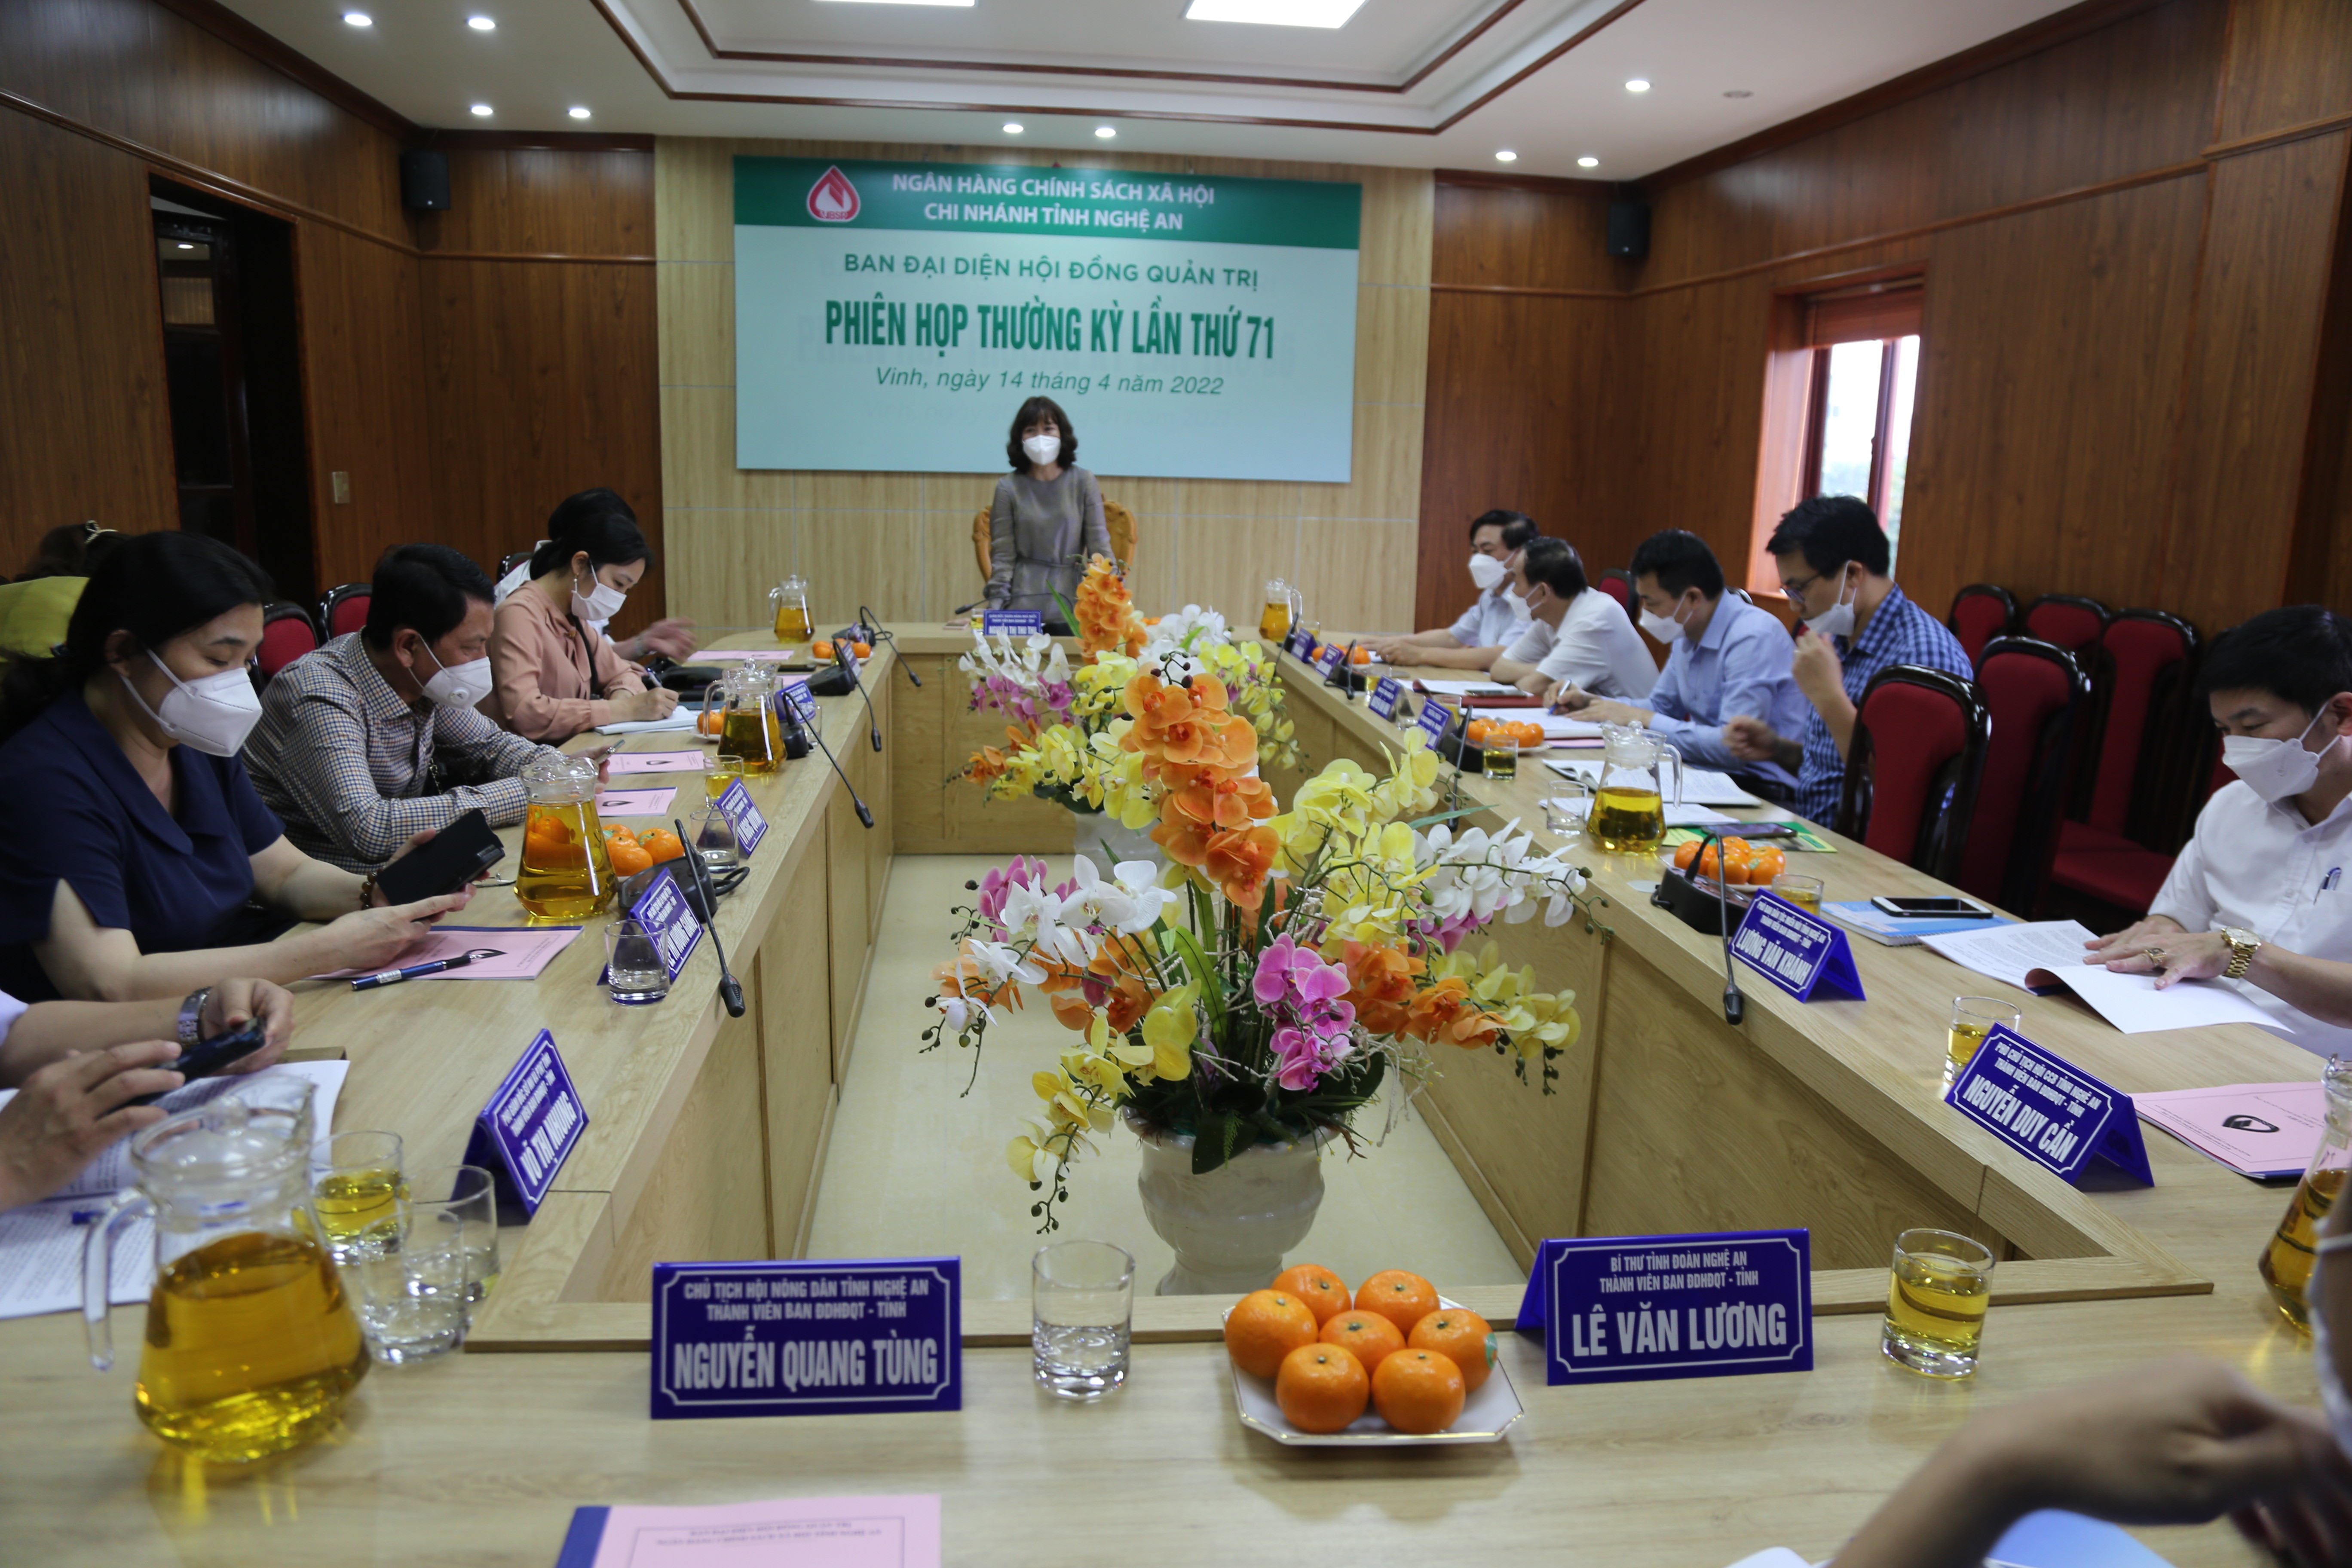 Đồng chí Nguyễn Thị Thu Thu - Giám đốc Ngân hàng nhà nước chi nhánh Nghệ An chủ trì phiên họp ban đại diện hội đồng quản trị NHCSXH chiều nay. Ảnh TH